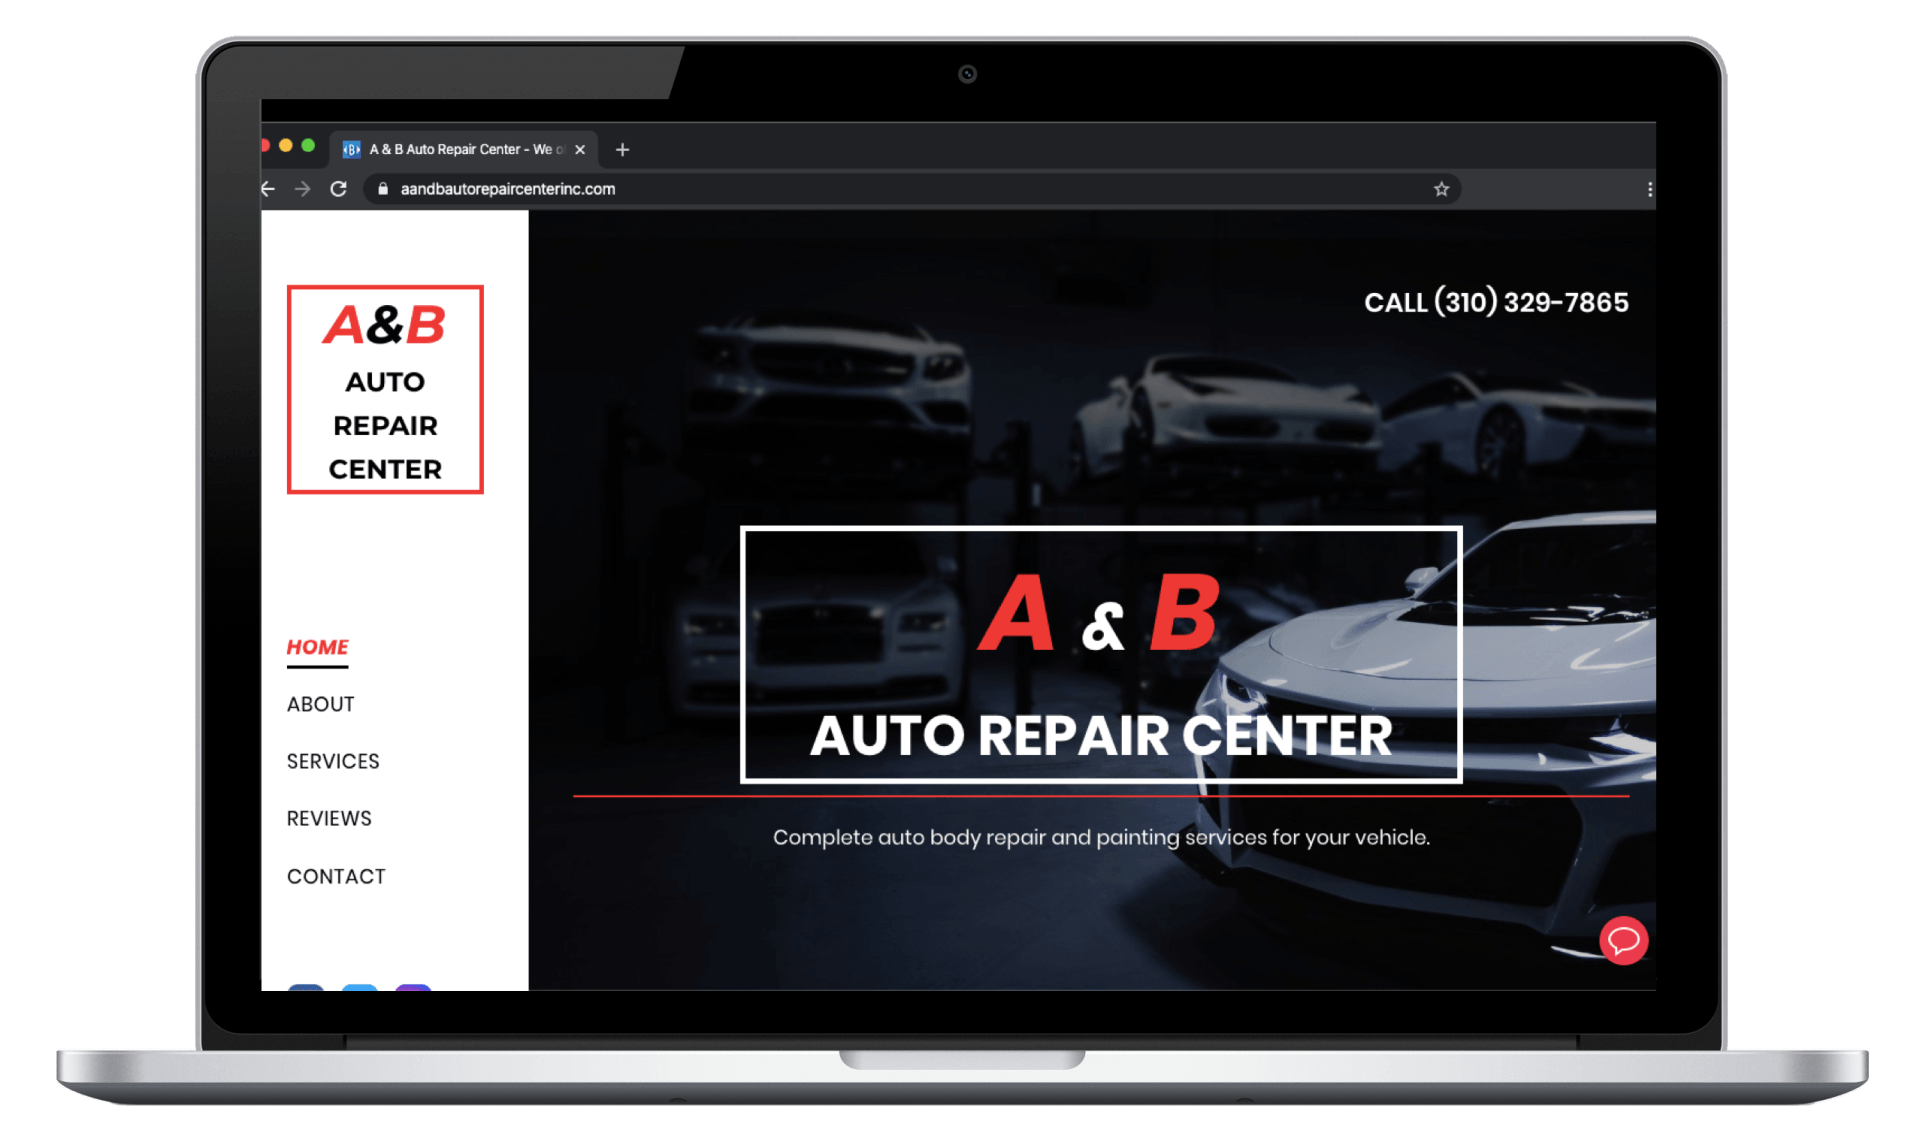 A&B Auto Repair Center